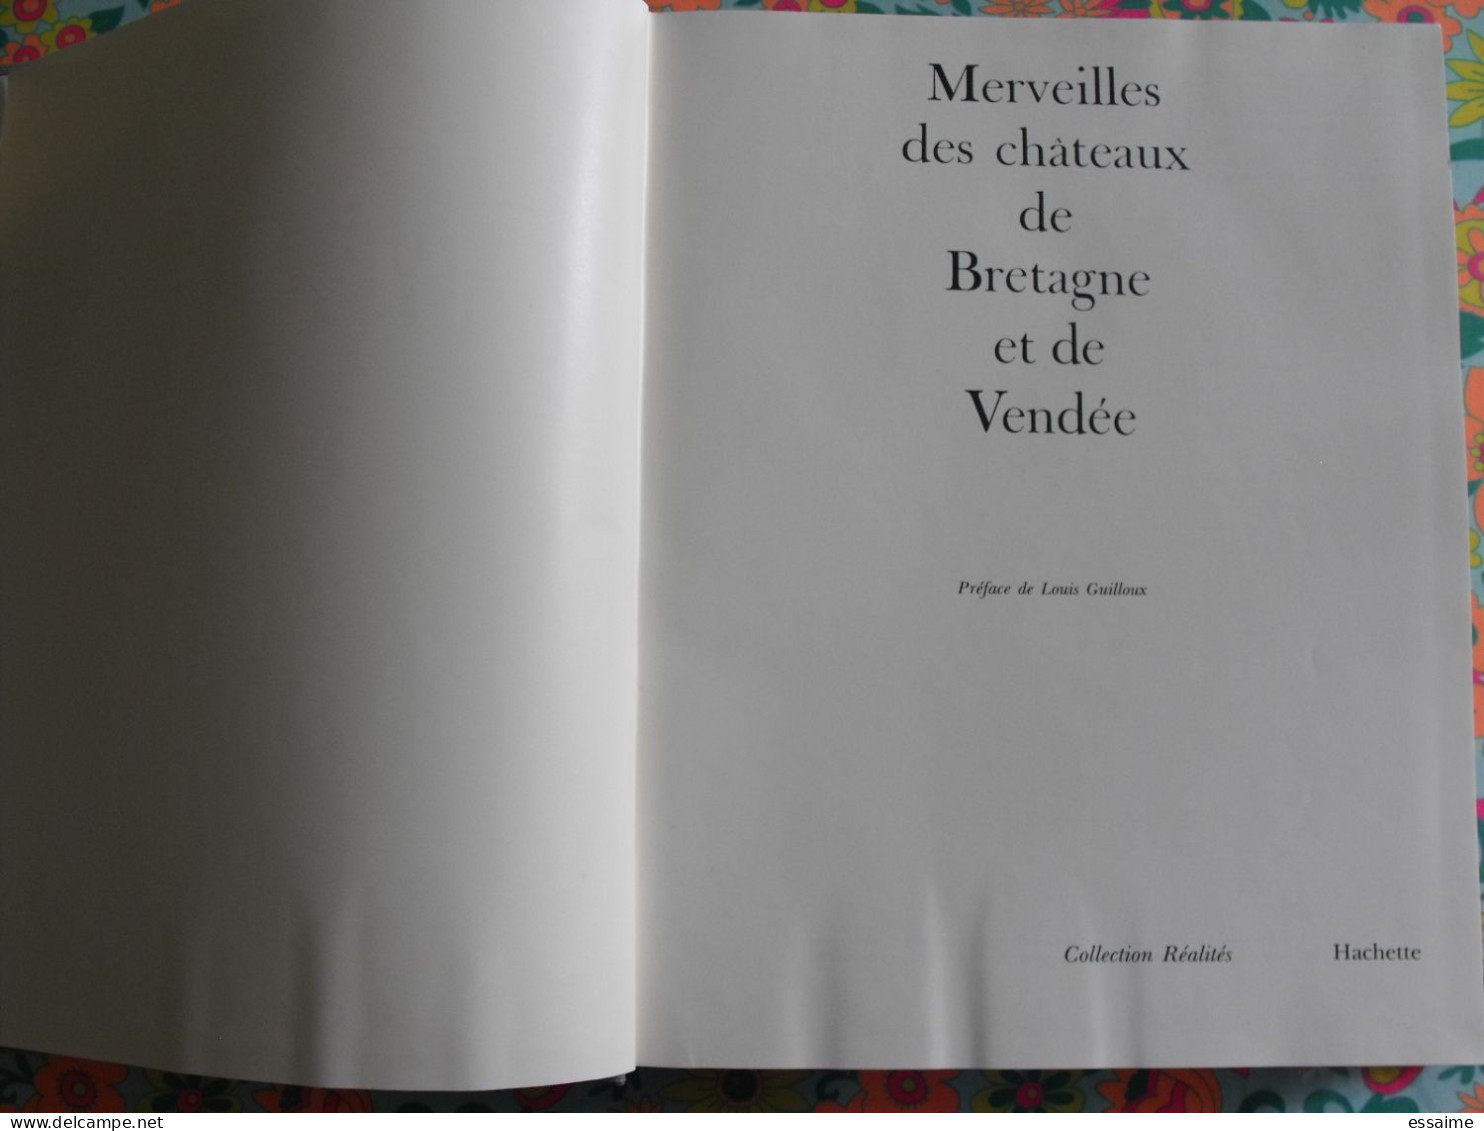 Merveilles Des Châteaux De Bretagne Et De Vendée. Hachette 1970. Bretagne Nantes Poitou Vendée. Bien Illustré - Pays De Loire